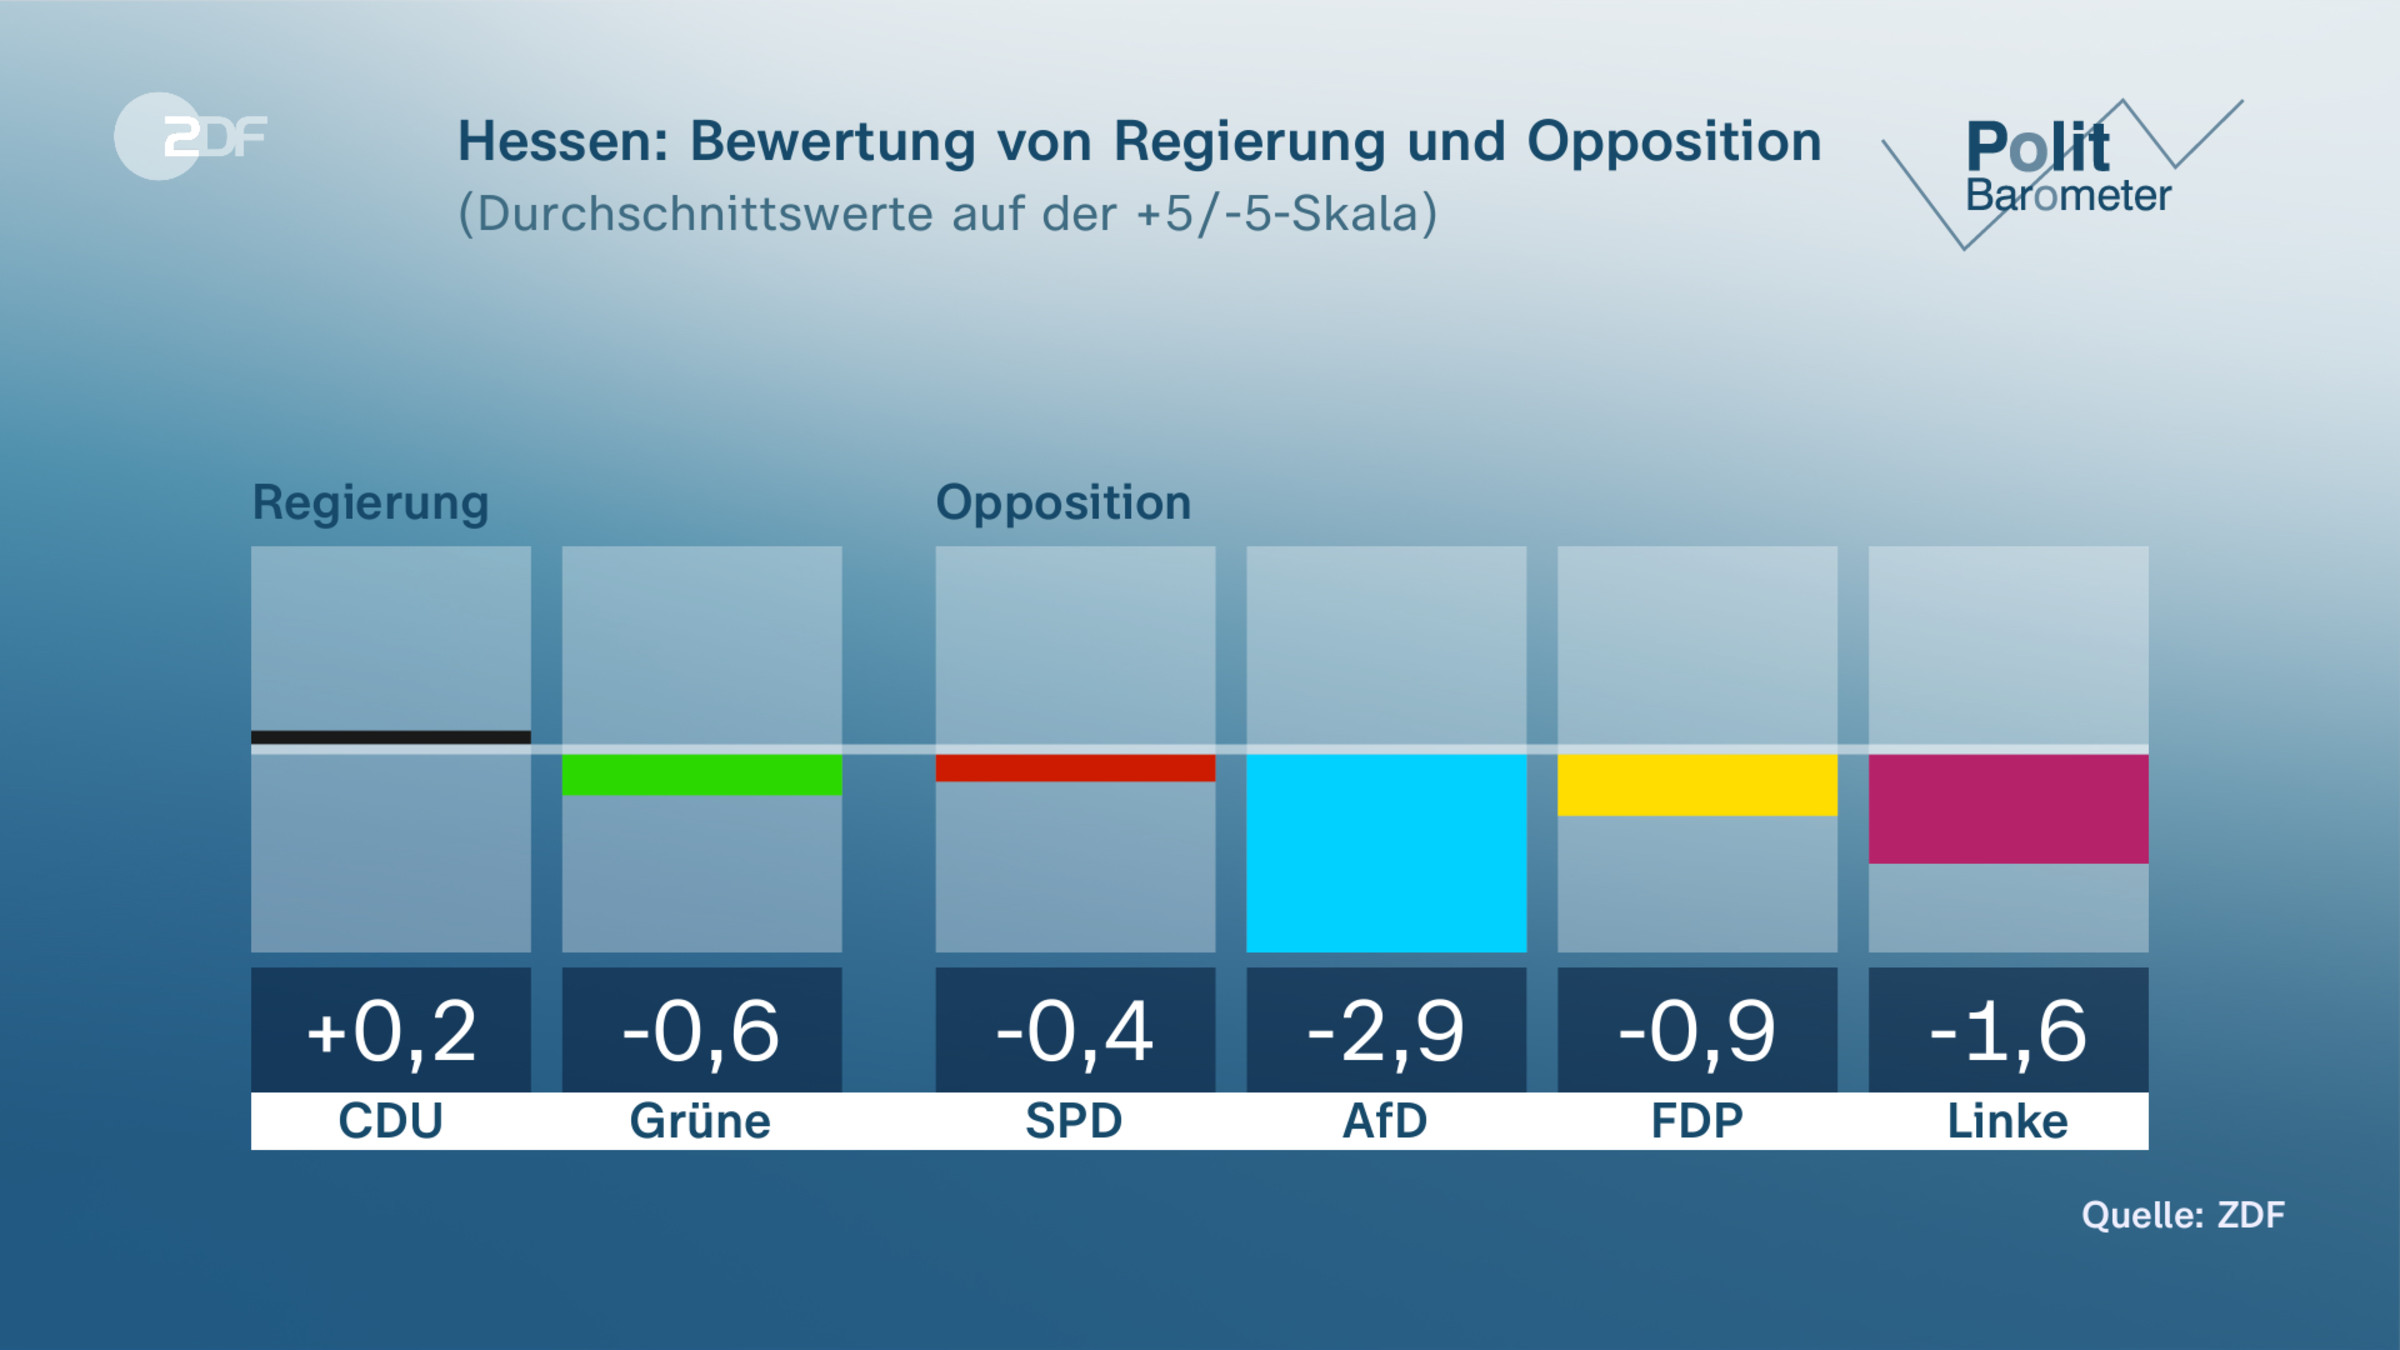 Hessen: Bewertung von Regierung und Opposition 